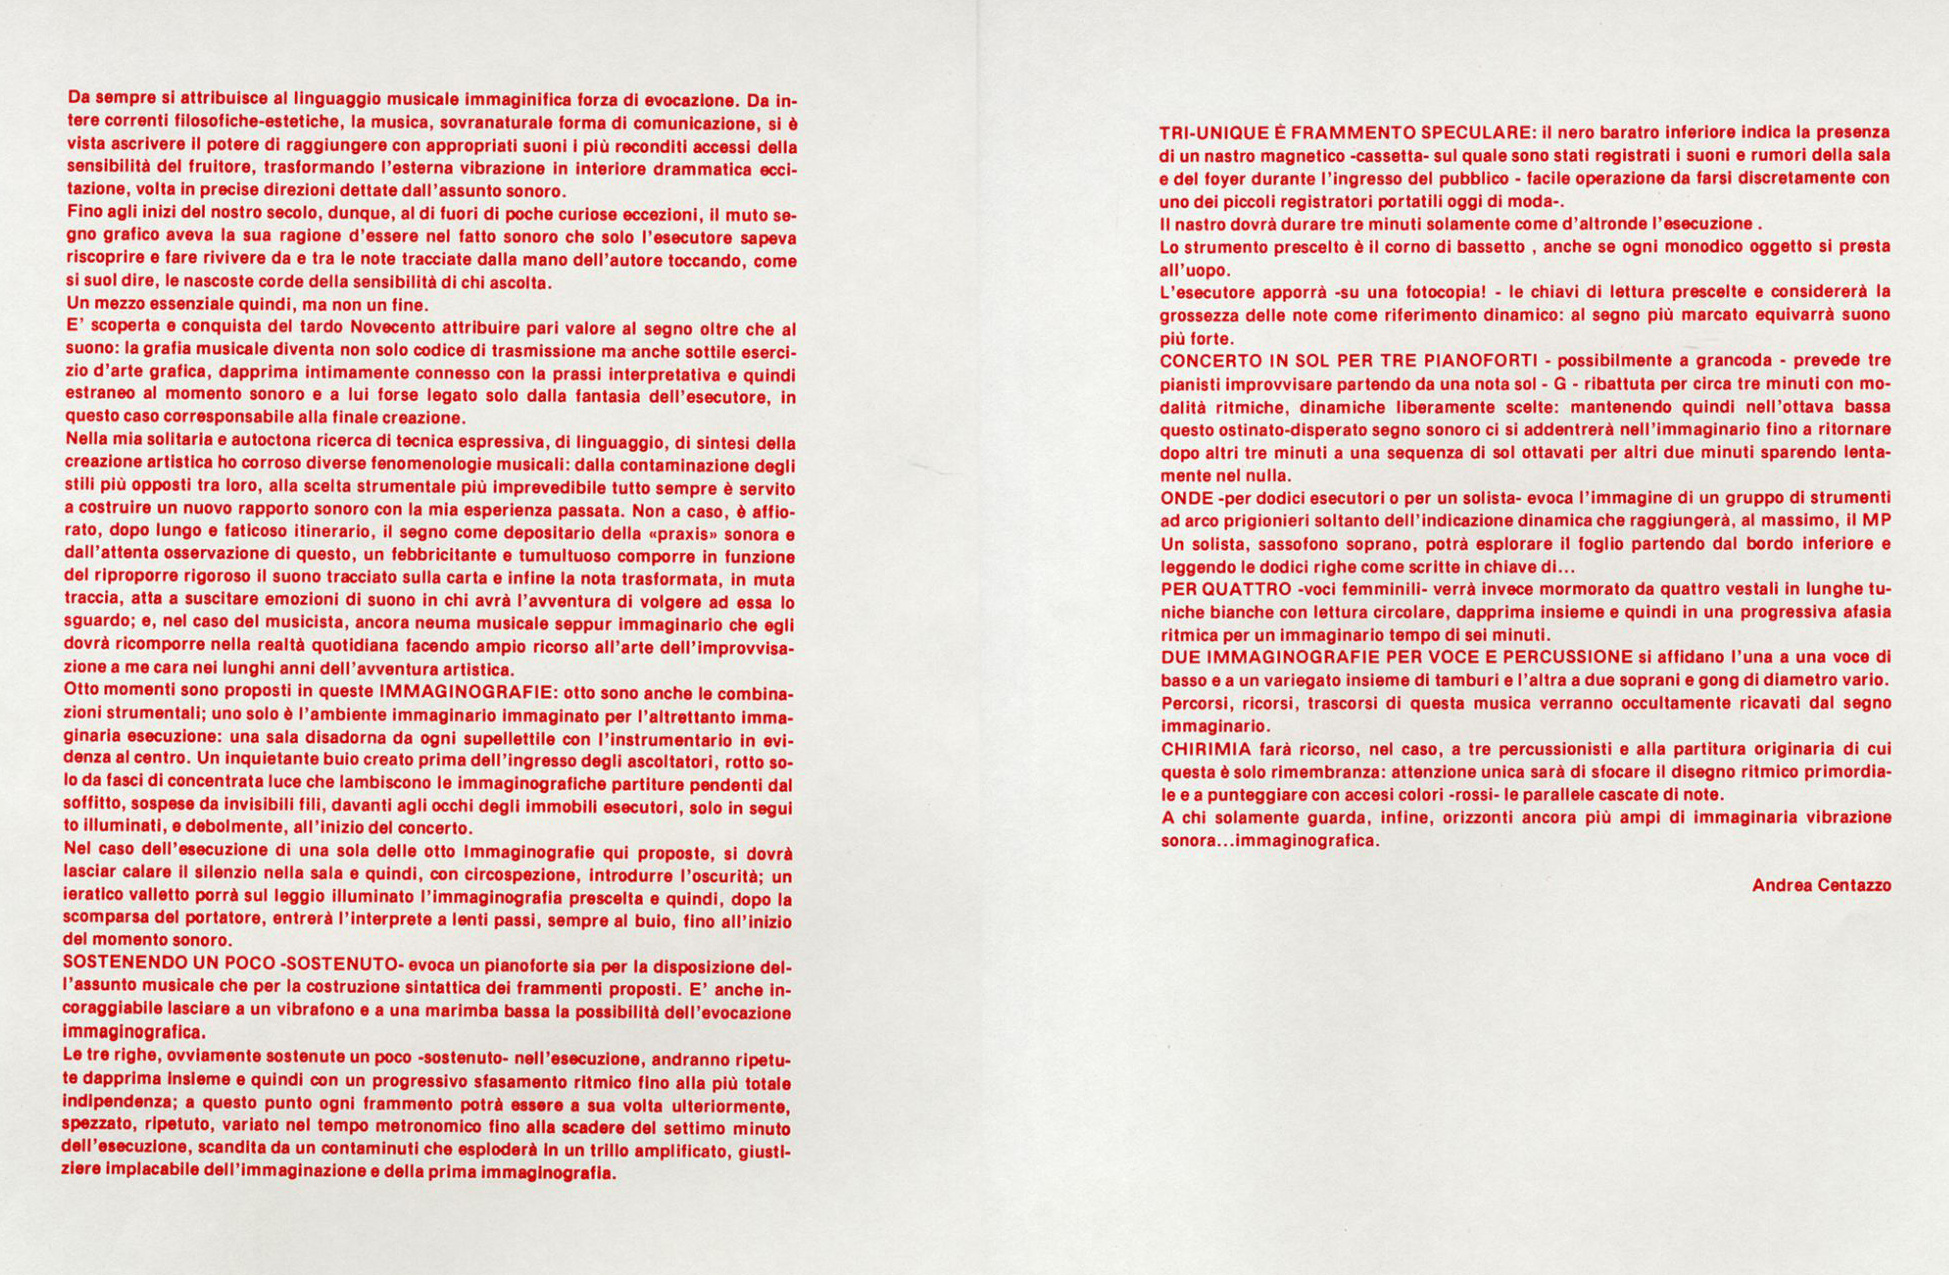 Immaginografie, testo di presentazione, 1984